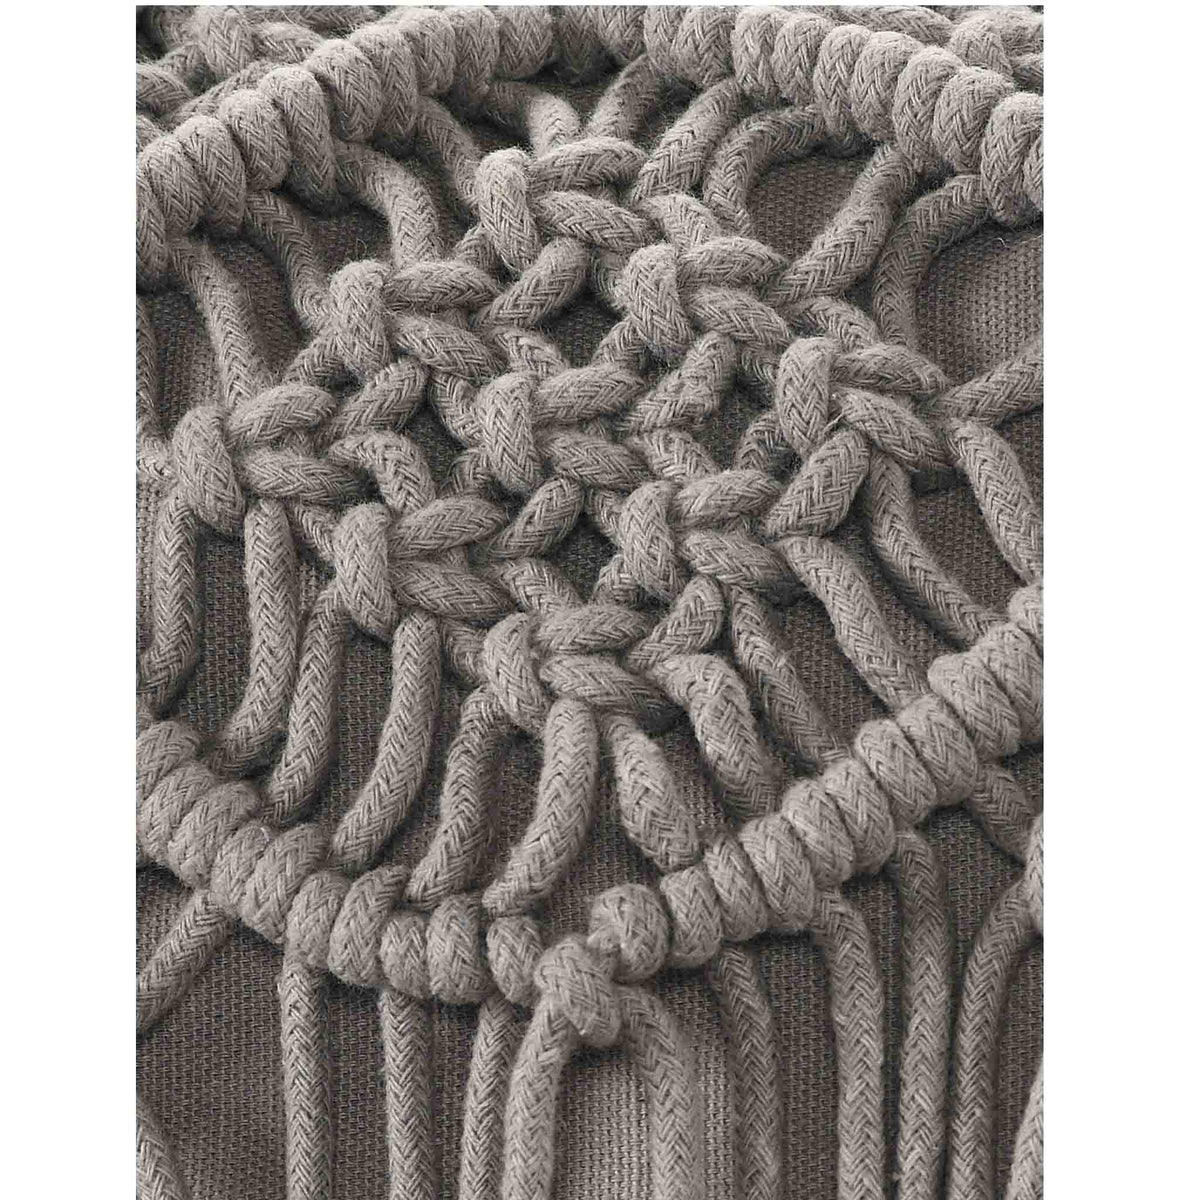 Grey Macrame Cushion with fringes